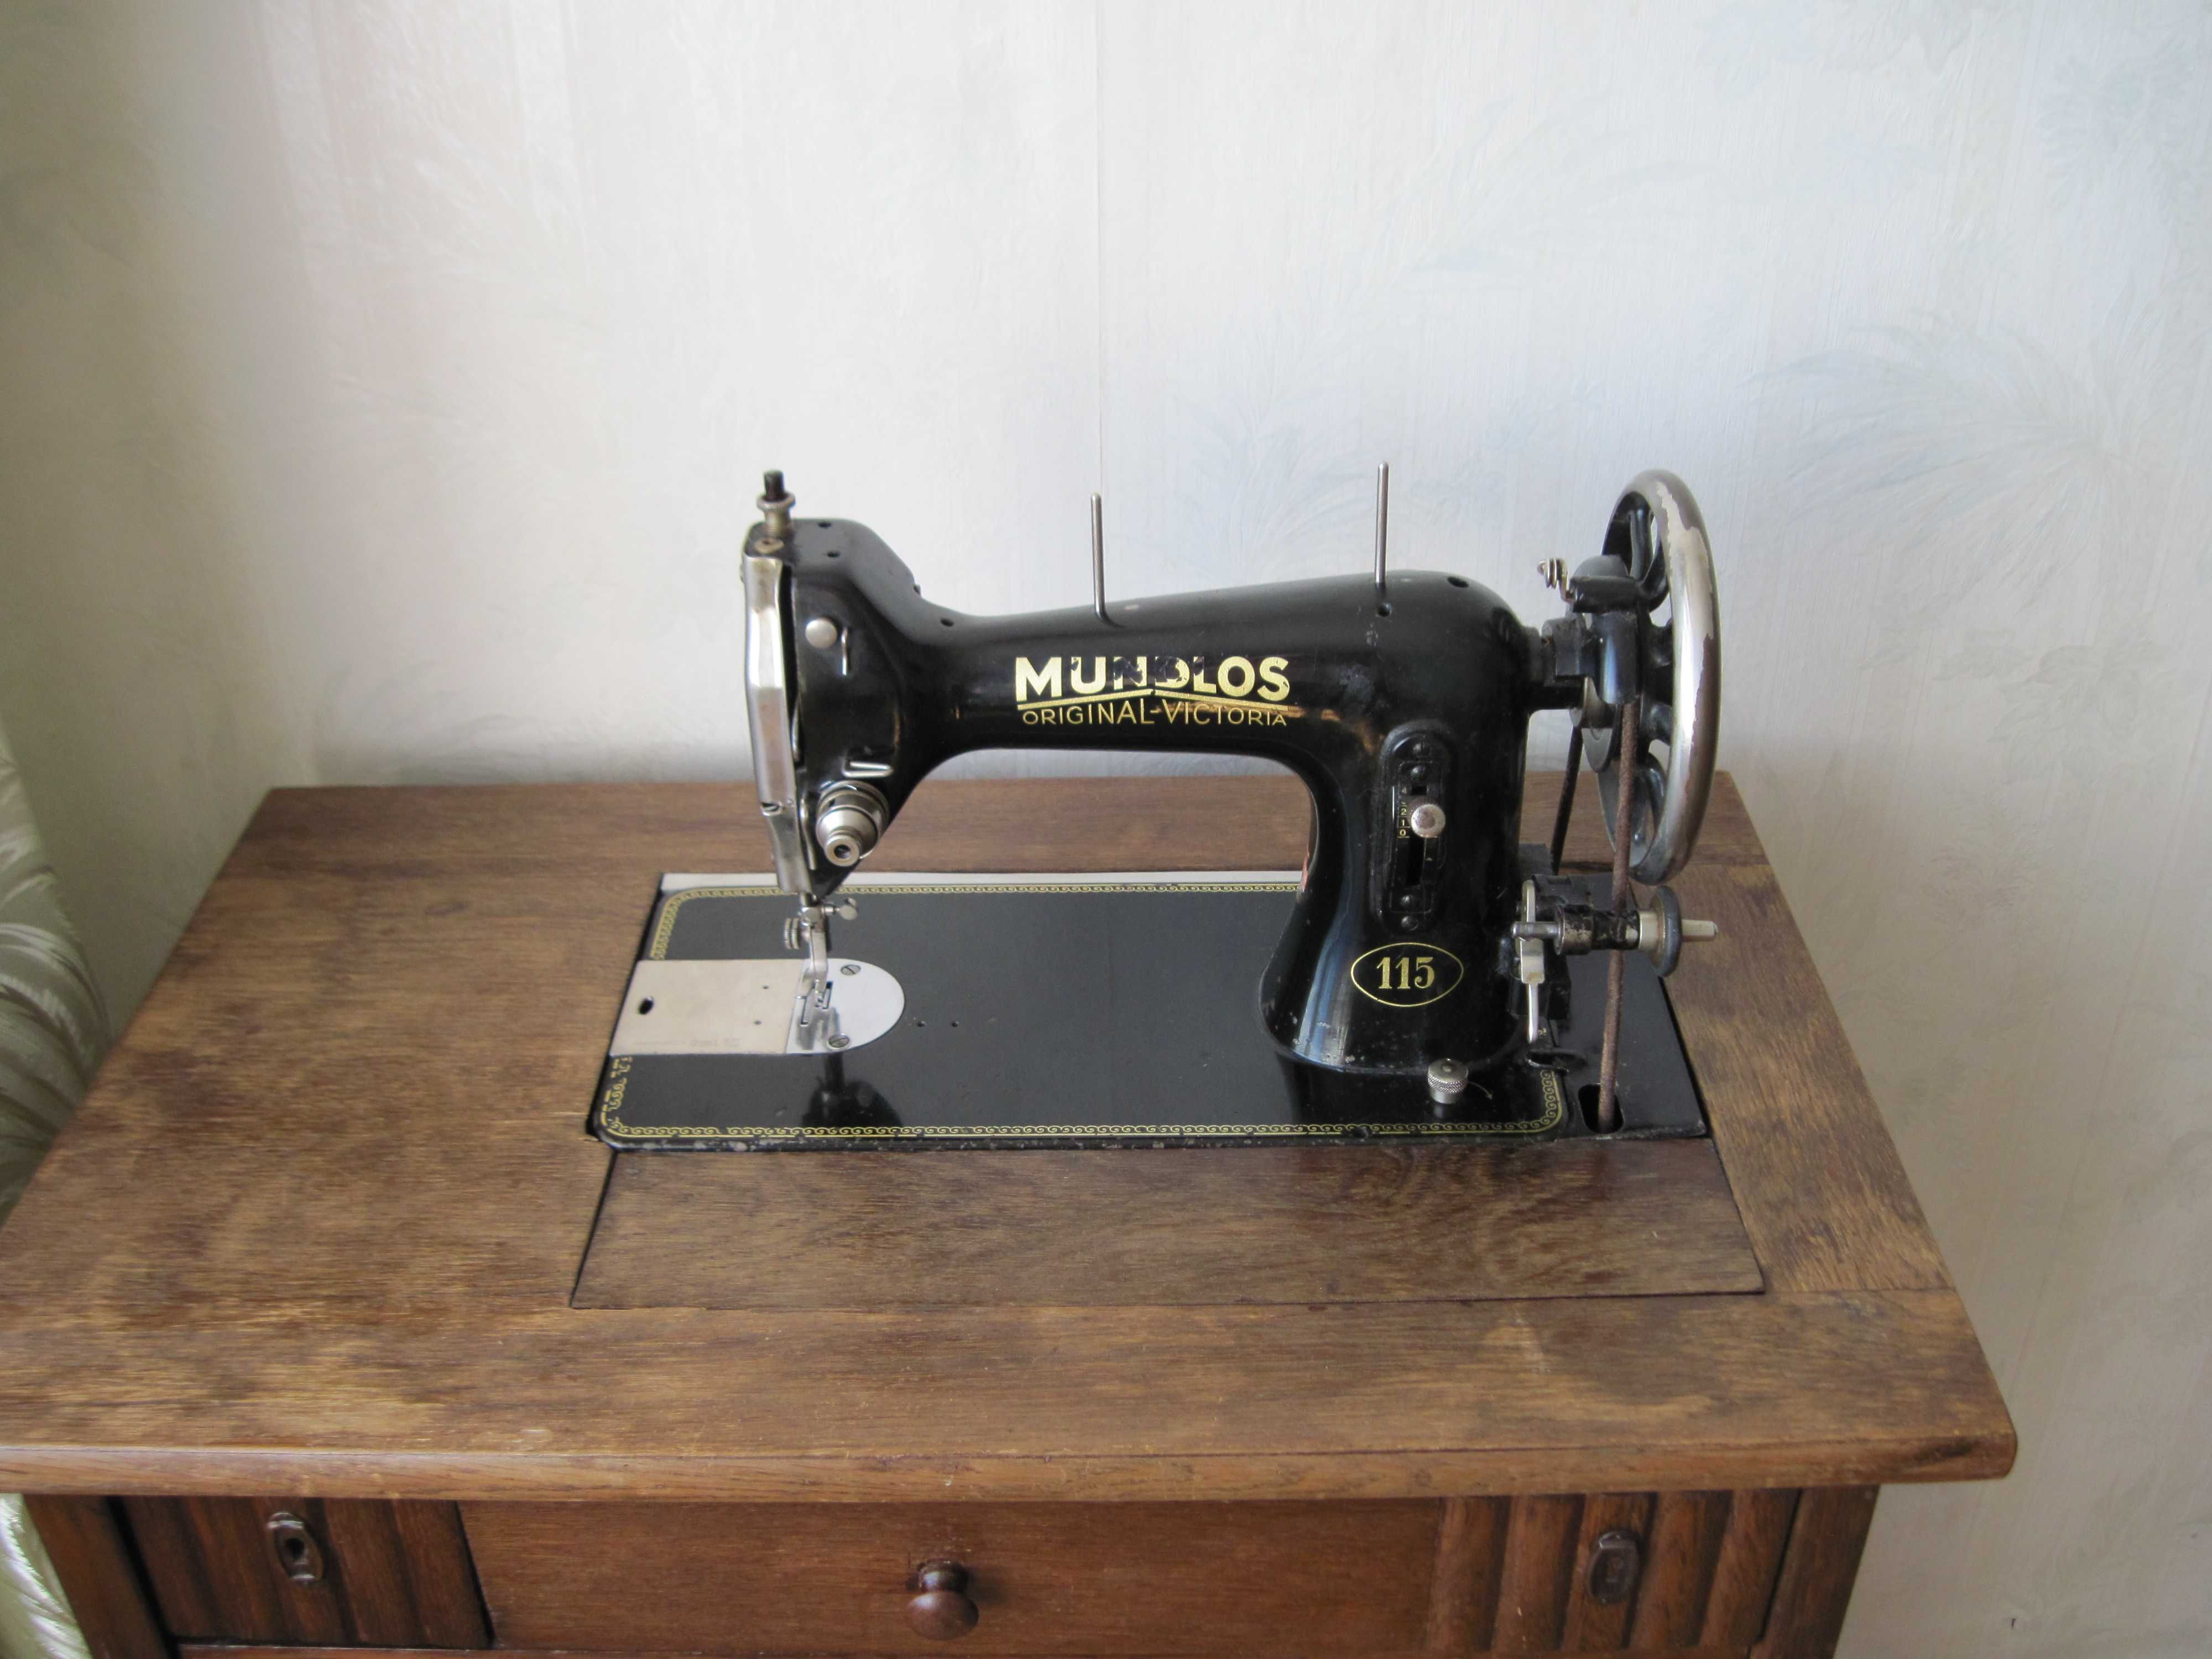 Швейная машинка MUNDLOS original viktoria 115